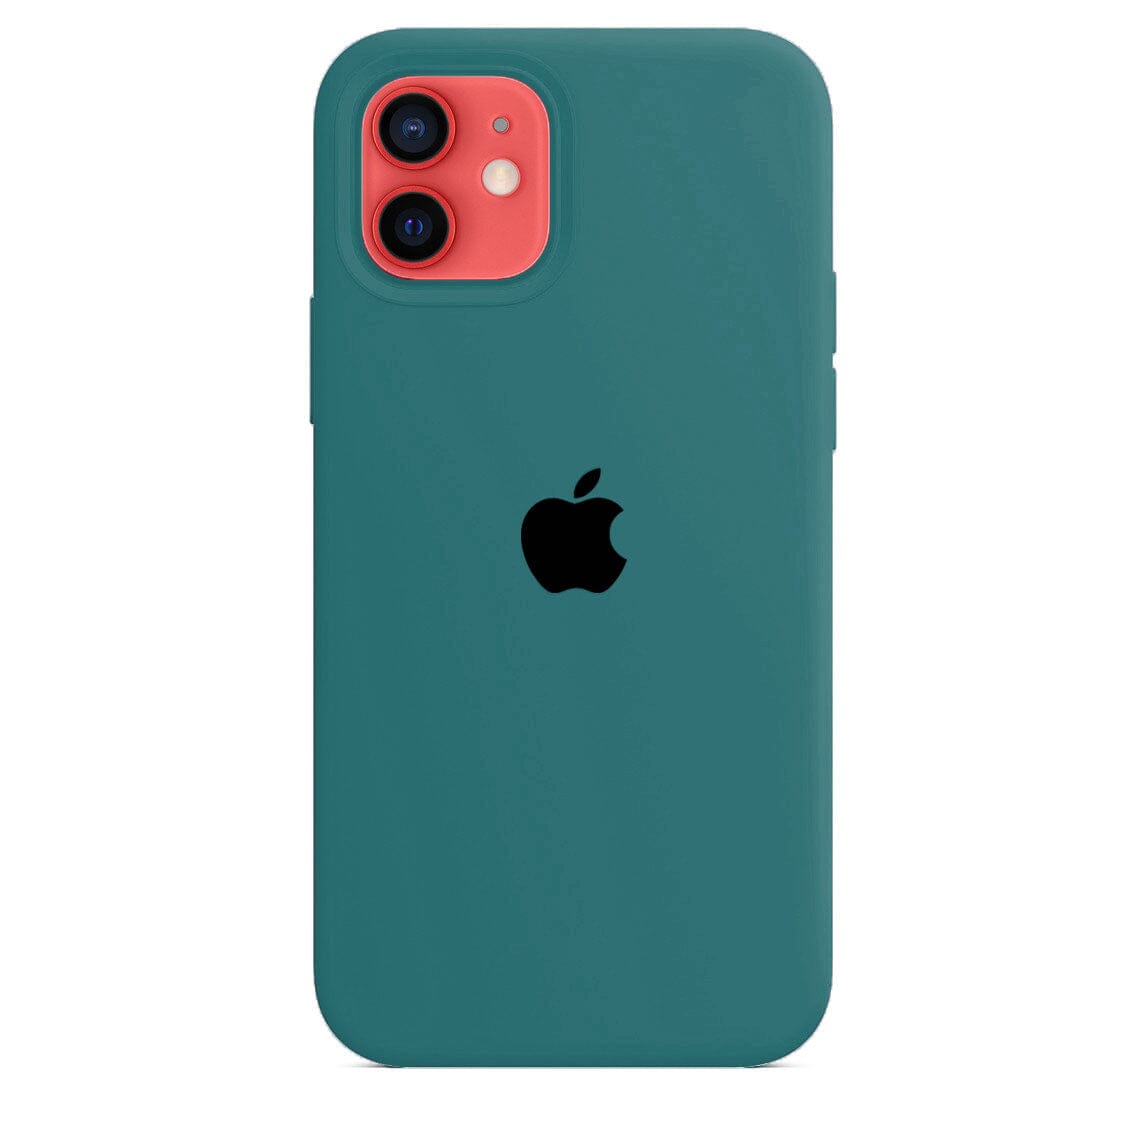 Husa iPhone Silicone Case Pine Green Anca's Store 12mini 